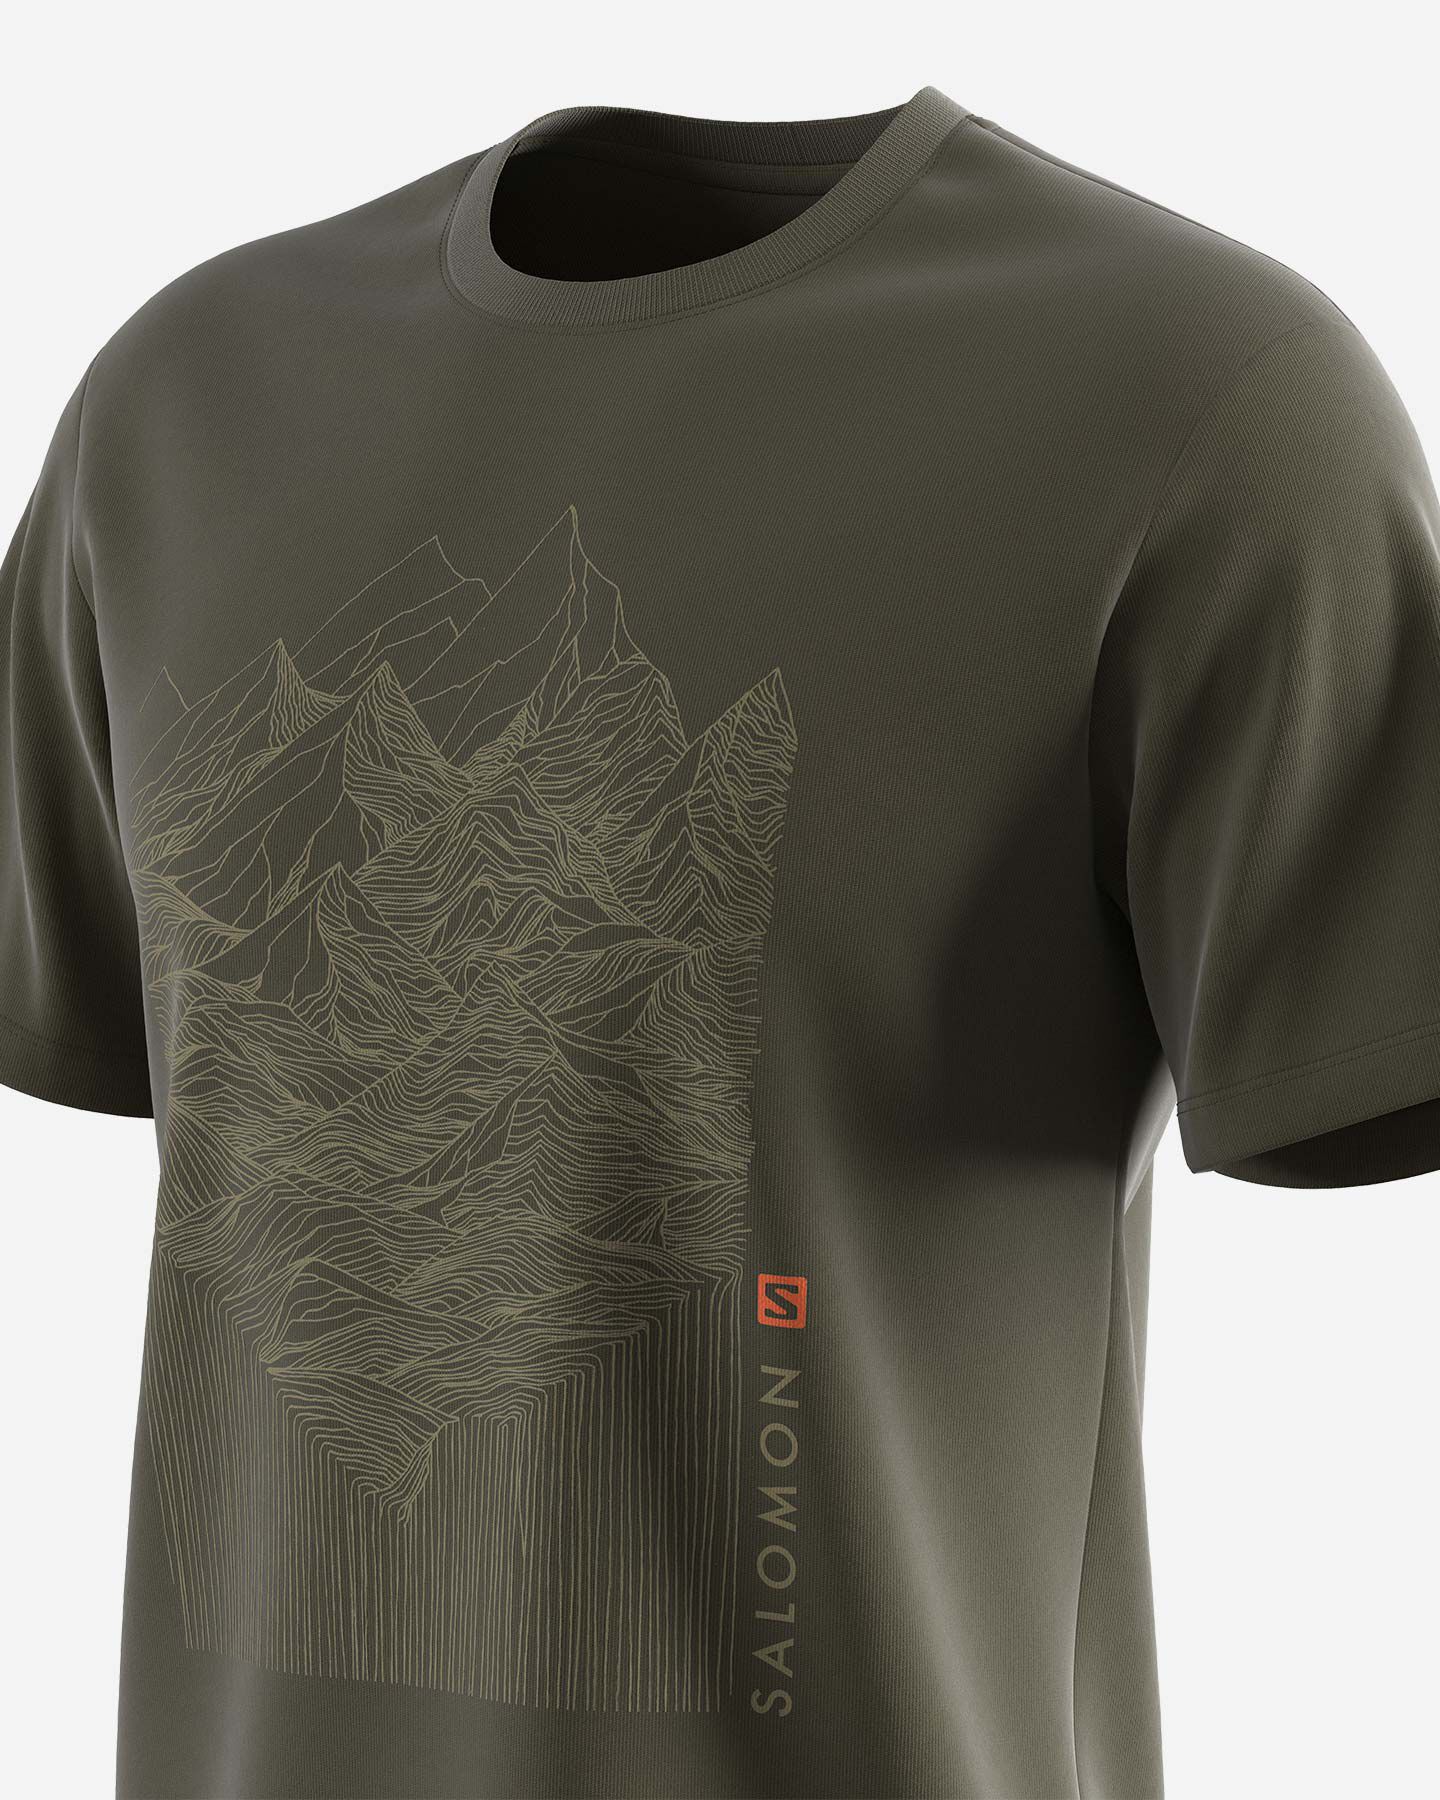  T-Shirt SALOMON OUTLIFE MOUNTAIN M S5407815|UNI|S scatto 5